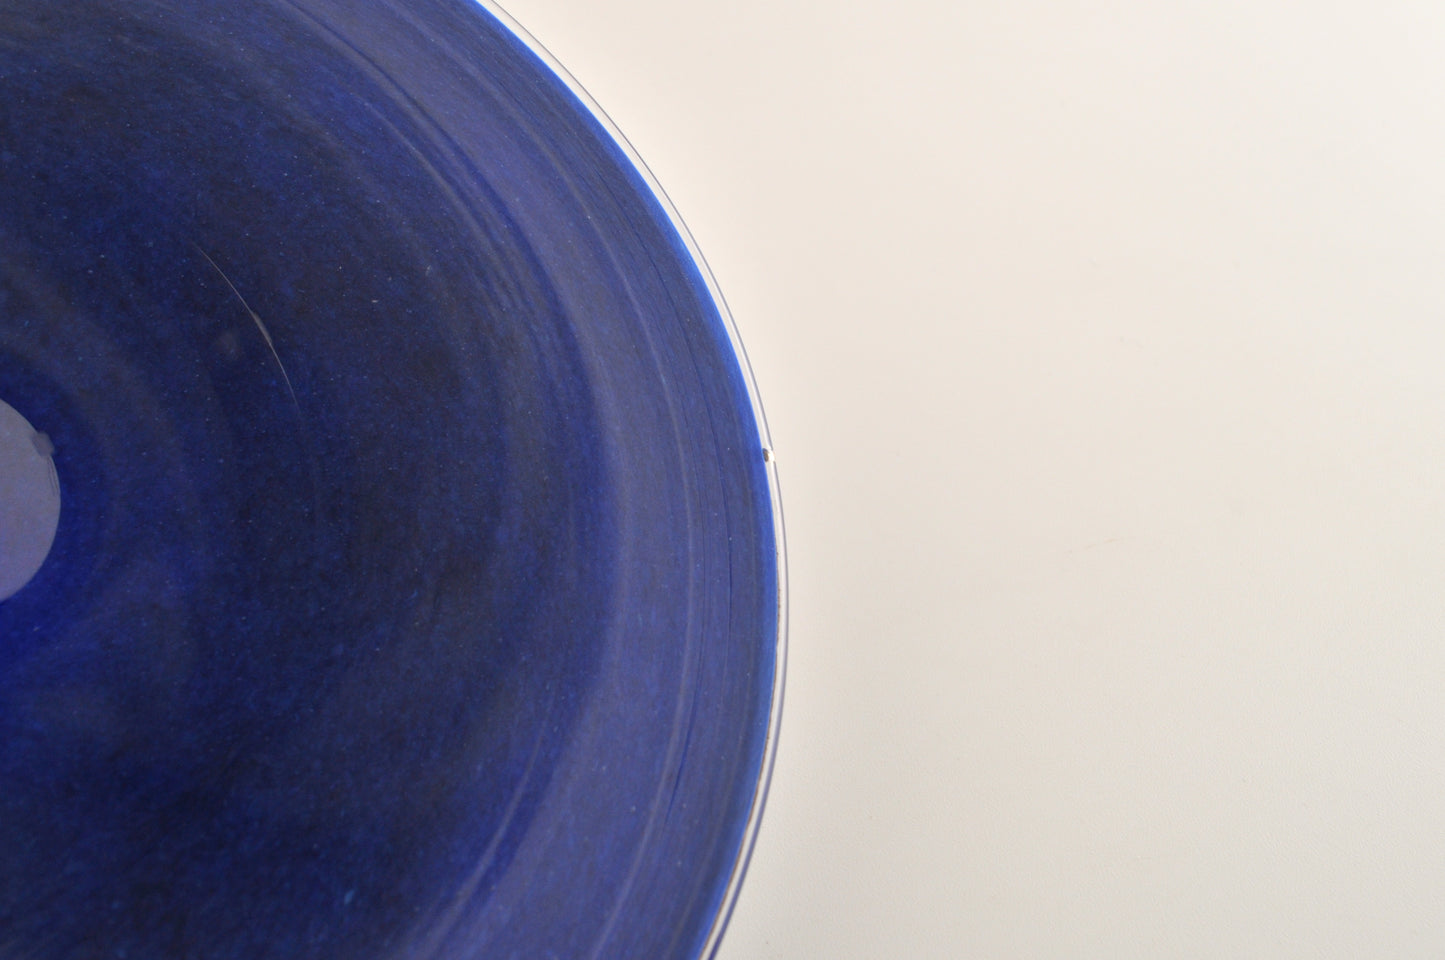 ibushi plate blue 4063